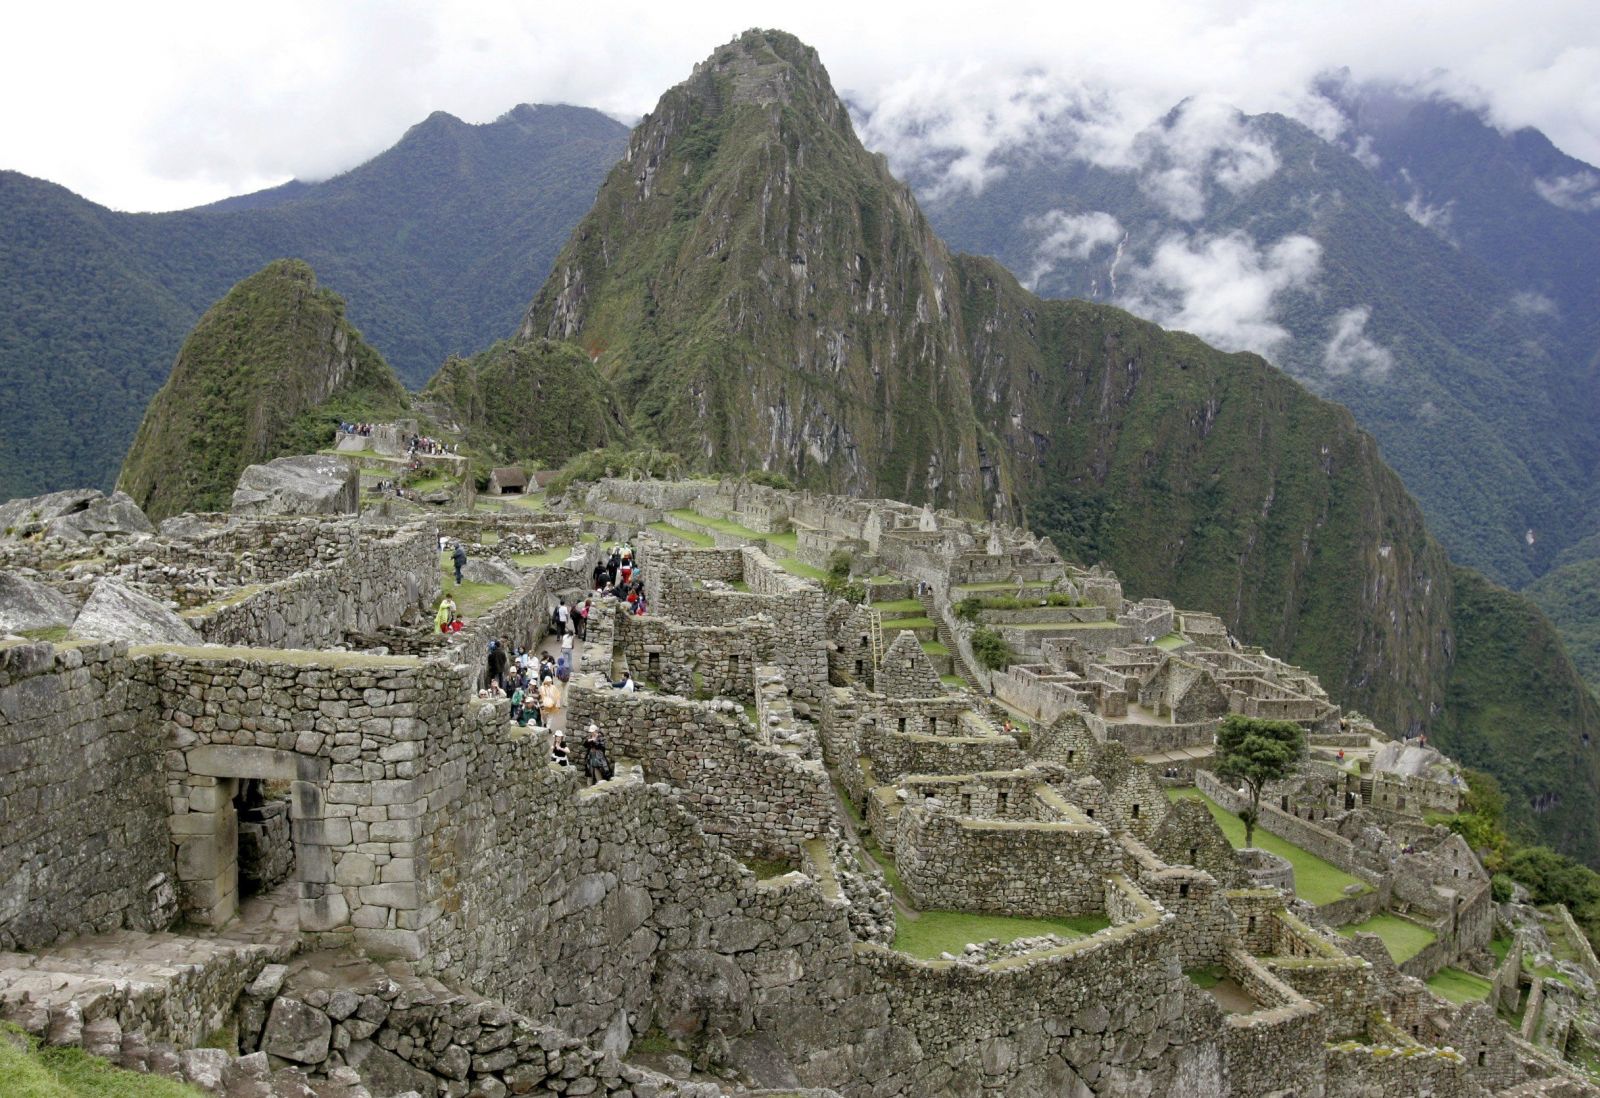 Skupinka turistov vykonala veľkú potrebu v chráme na Machu Picchu. Okrem toho rozbili dlažbu a poškodili múry